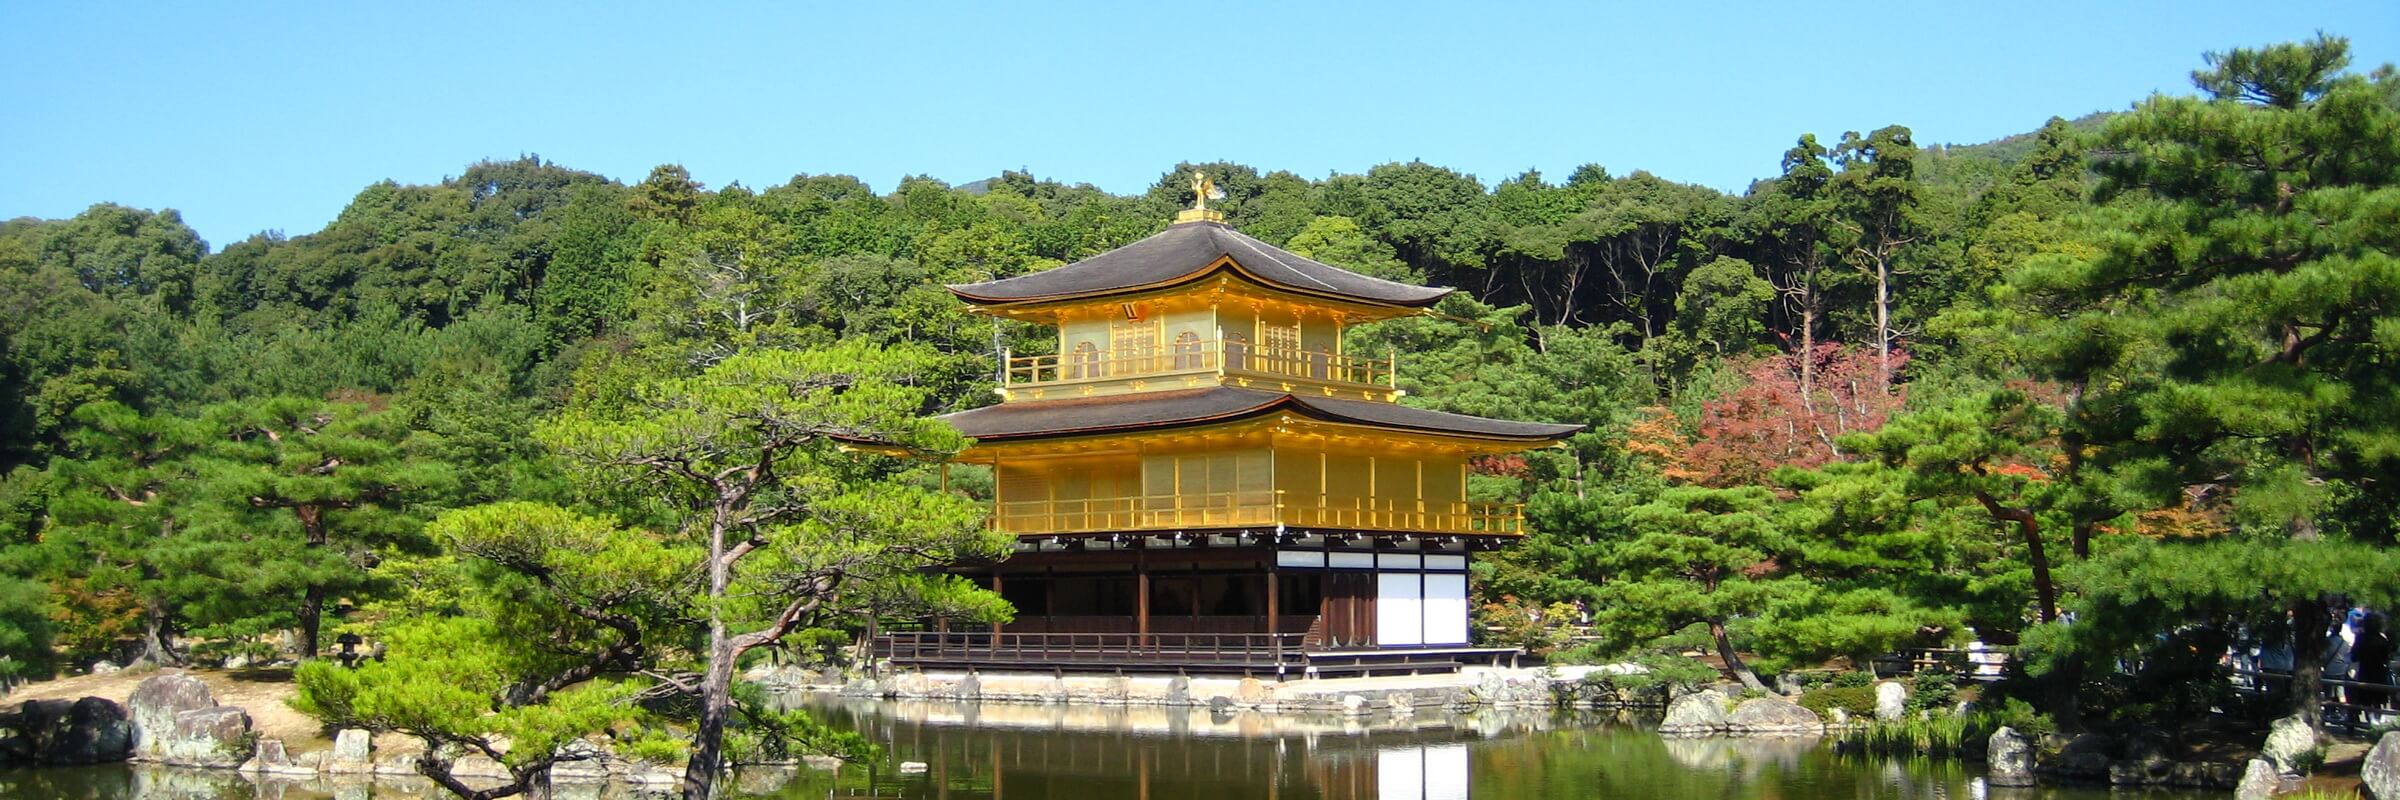 Der Besuch der Anlage des Goldenen Pavillons ist ein Höhepunkt unter einer Fülle an Kulturgütern in der ehemaligen Kaiserstadt Kyoto.